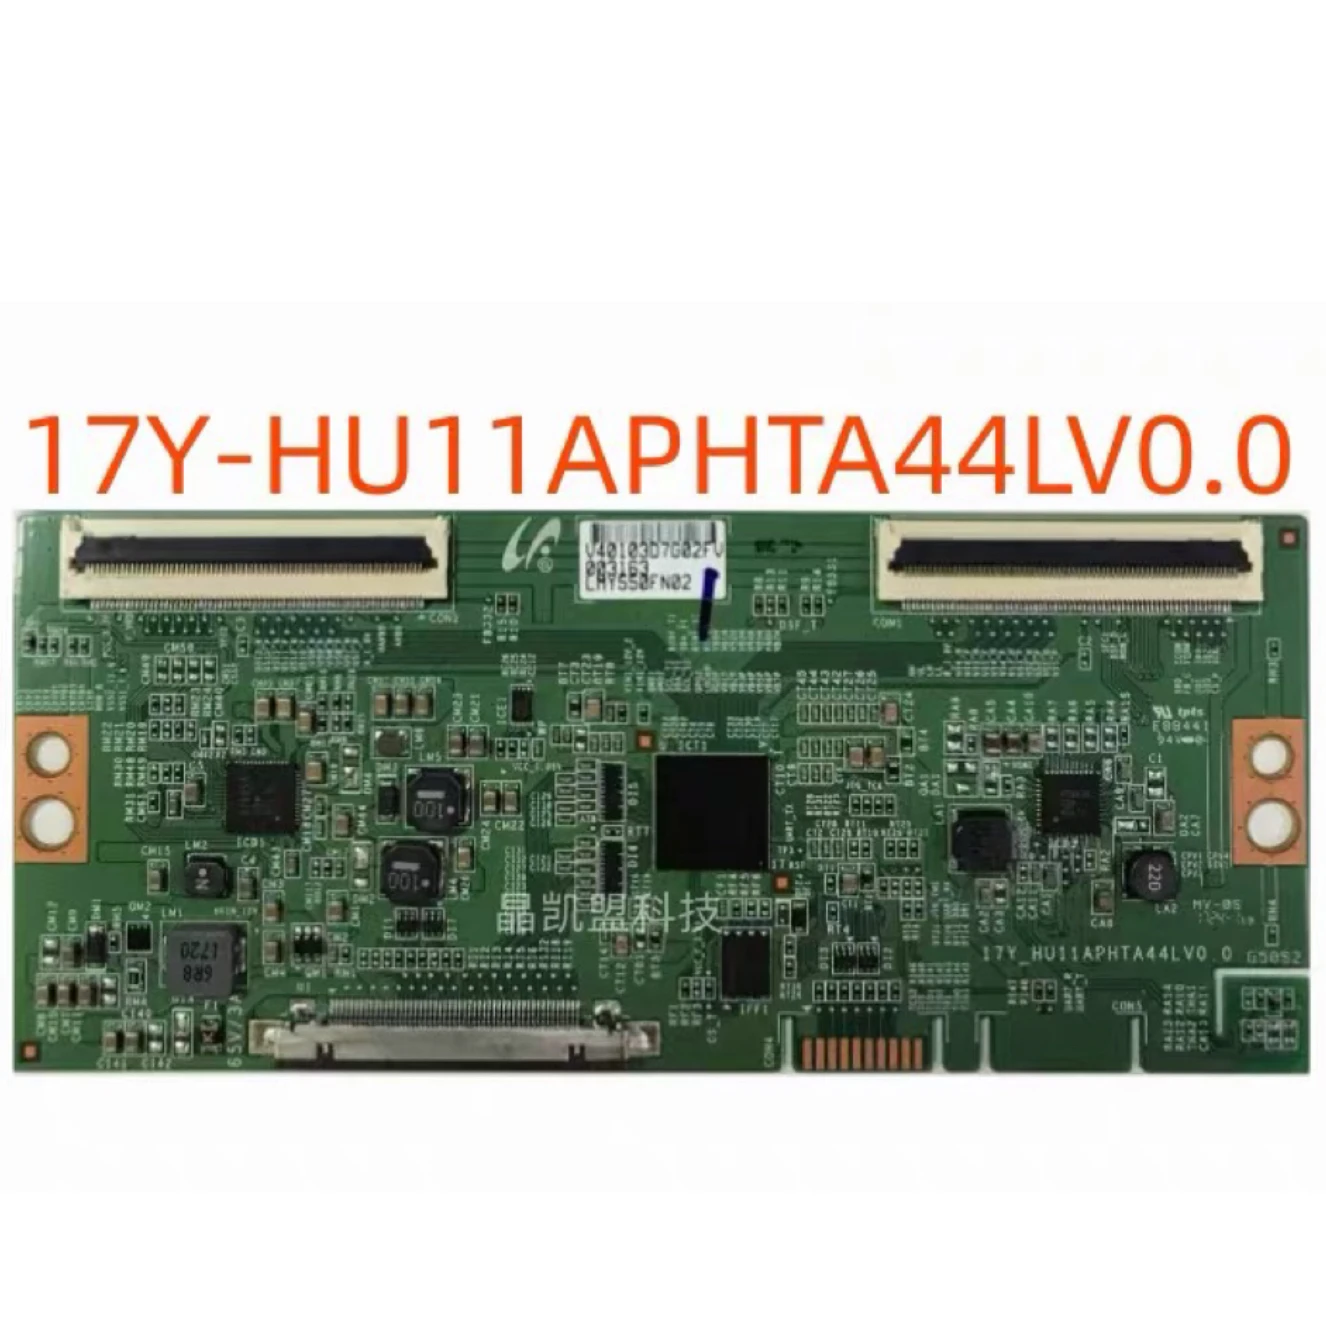 

Original 55 inch 17Y-HU11APHTA44LV0.0 17Y_HU11APHTA44LV0.0 Logic Board